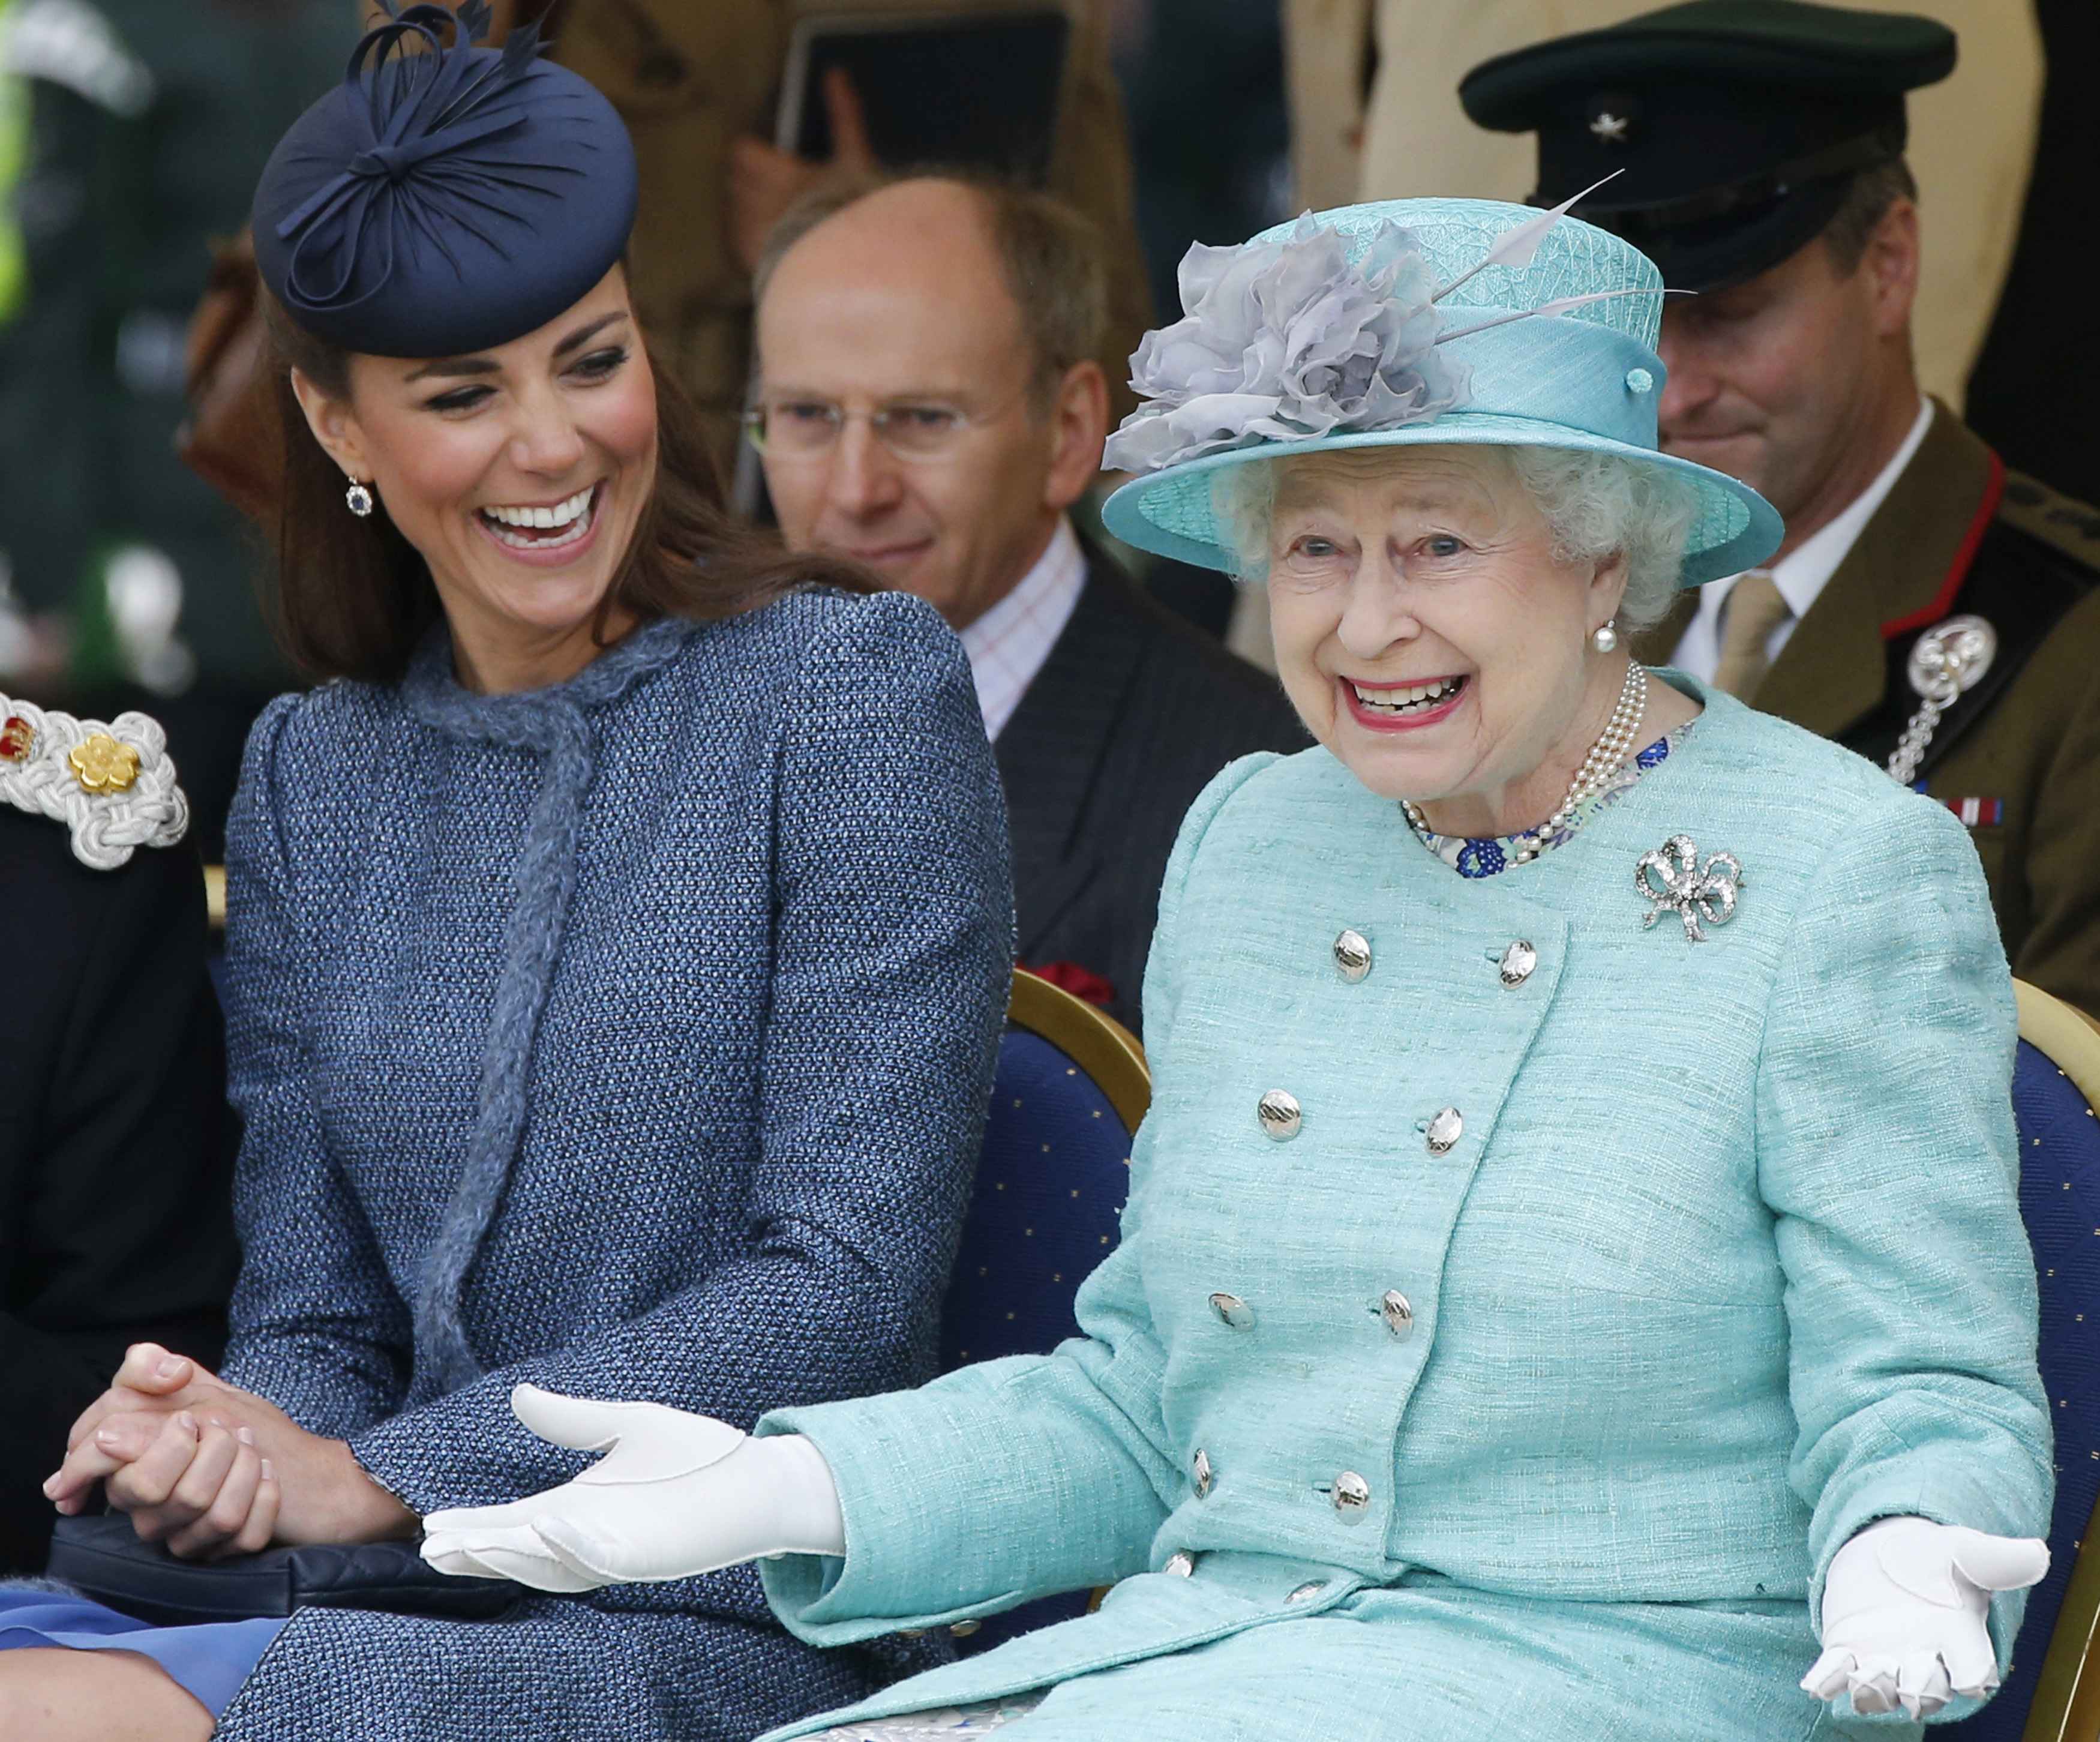 Catherine, duchesse de Cambridge et la reine Élisabeth II regardent une partie d'un événement sportif pour enfants lors de la visite de Vernon Park pendant le Jubilé de diamant à Nottingham le 13 juin 2012 à Nottingham, Angleterre. | Source : Getty Images